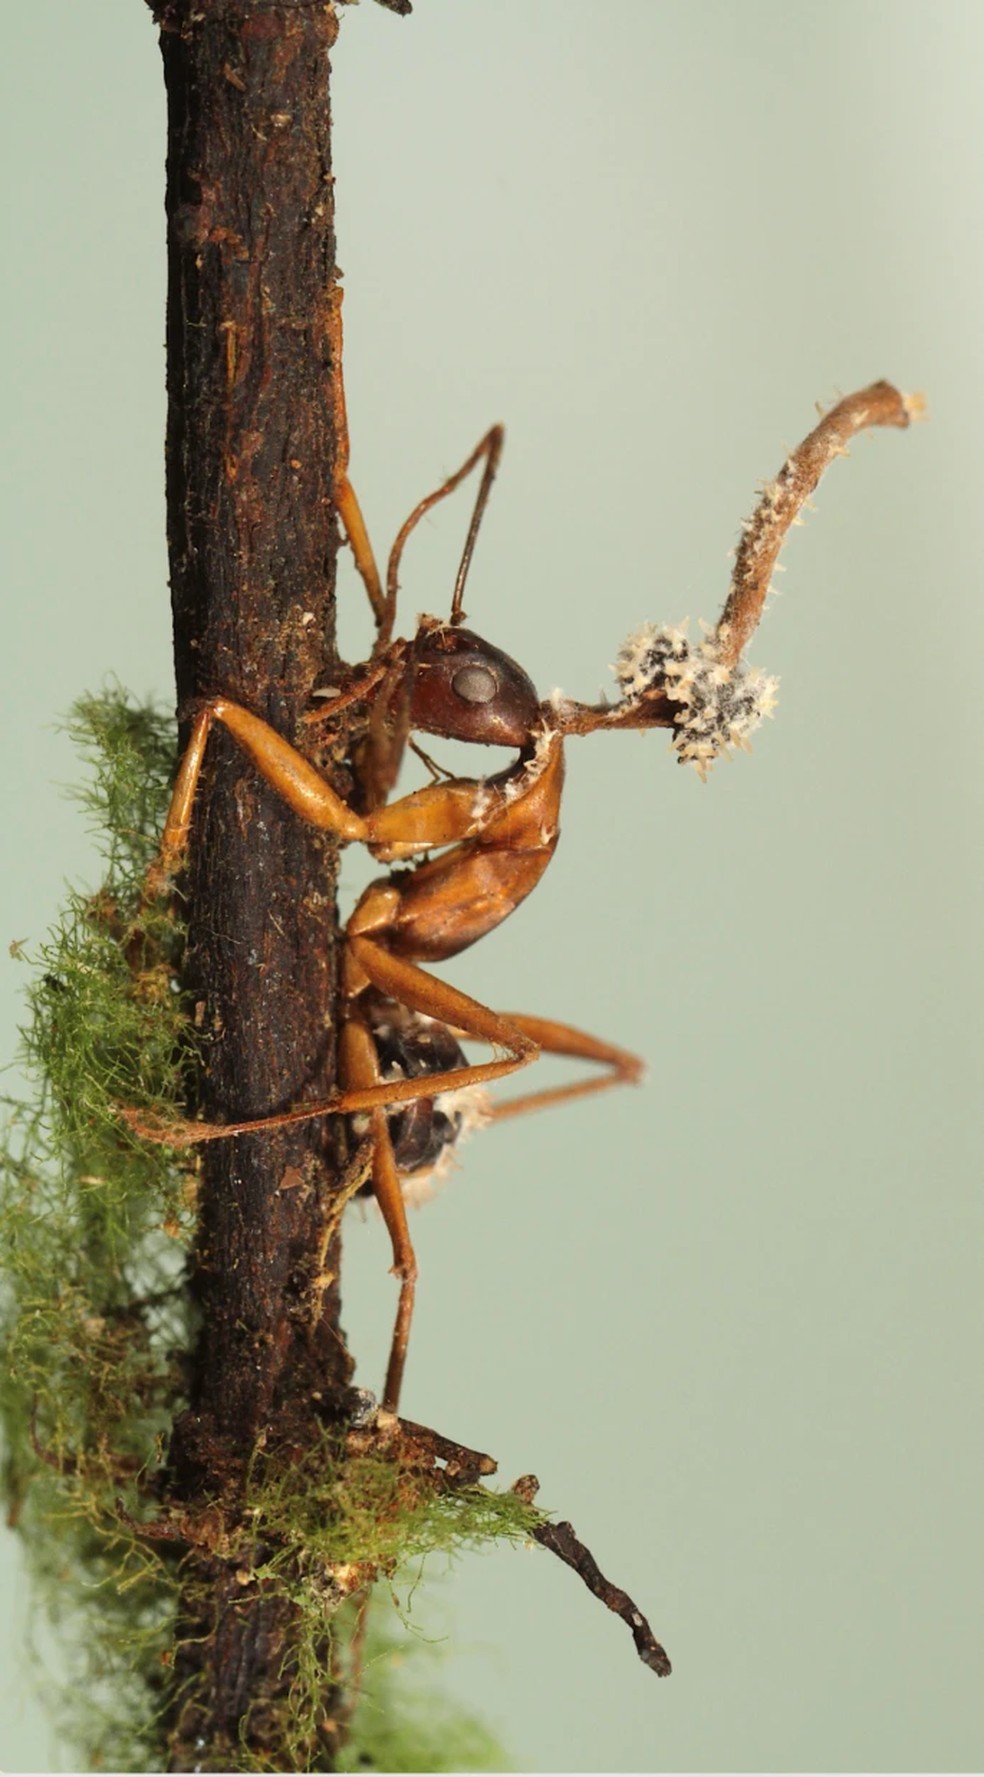 Fungo micoparasita que infesta o corpo frutífero de um fungo "zumbi" de formiga — Foto: João Araújo